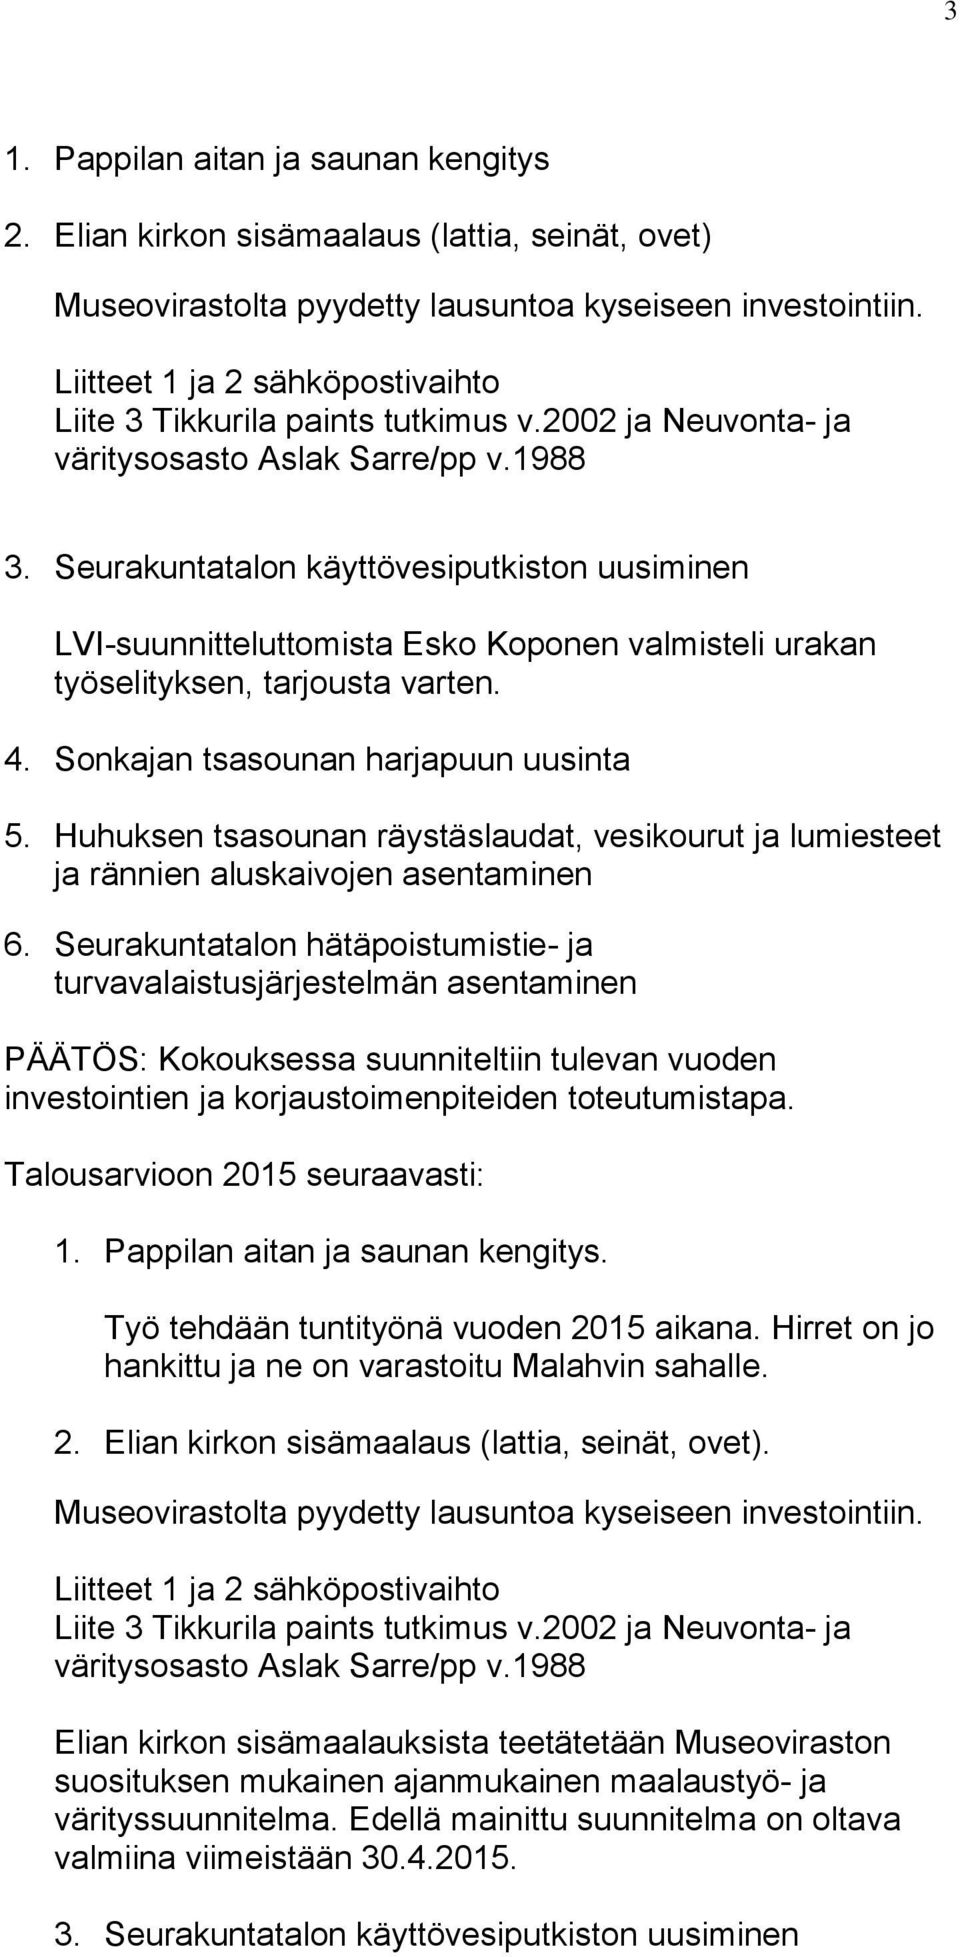 Seurakuntatalon käyttövesiputkiston uusiminen LVI-suunnitteluttomista Esko Koponen valmisteli urakan työselityksen, tarjousta varten. 4. Sonkajan tsasounan harjapuun uusinta 5.